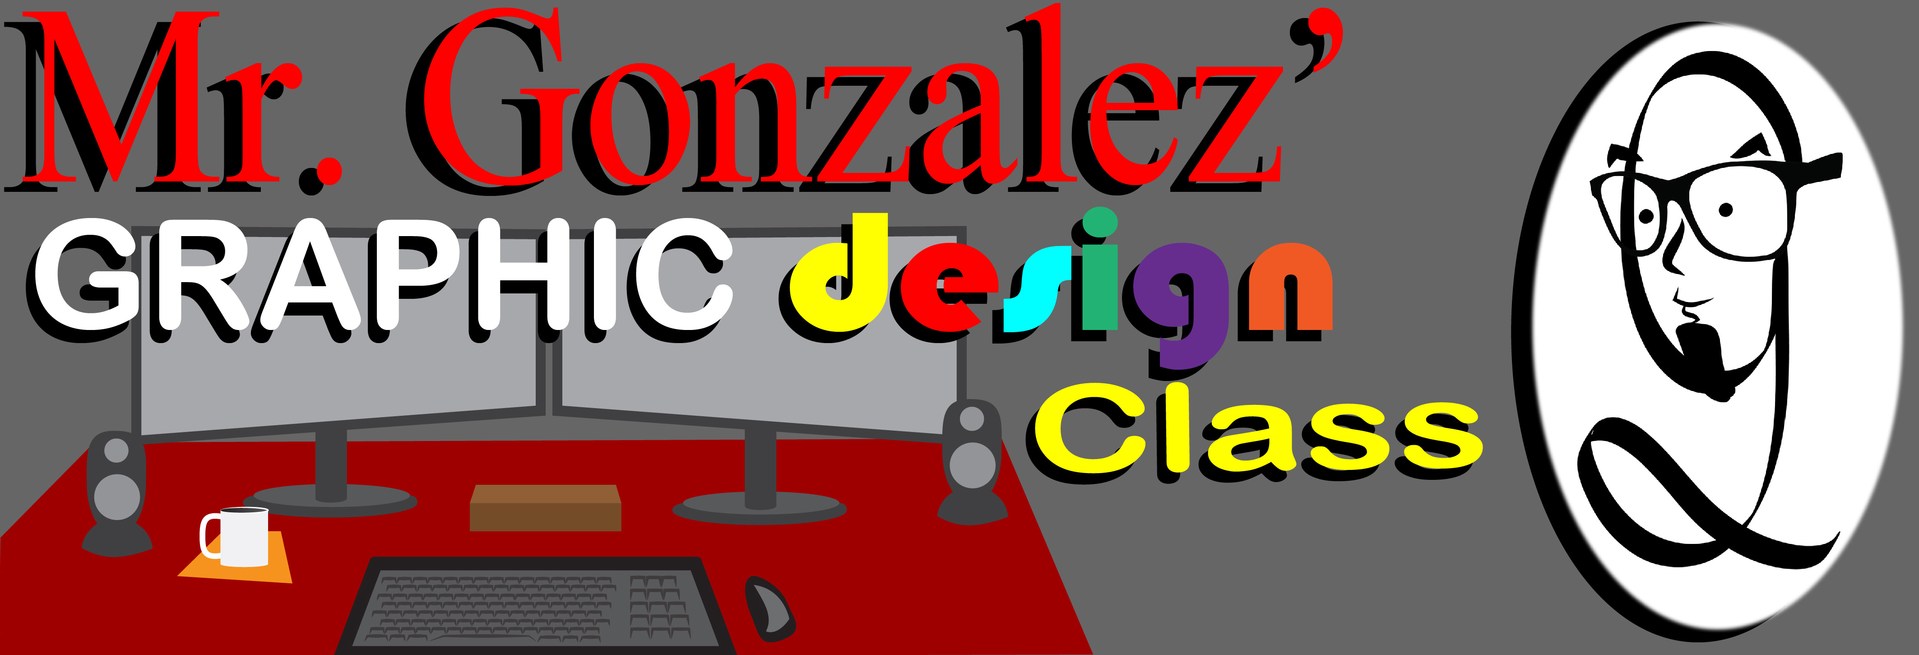 Mr. Gonzalez' Graphic Design Page header